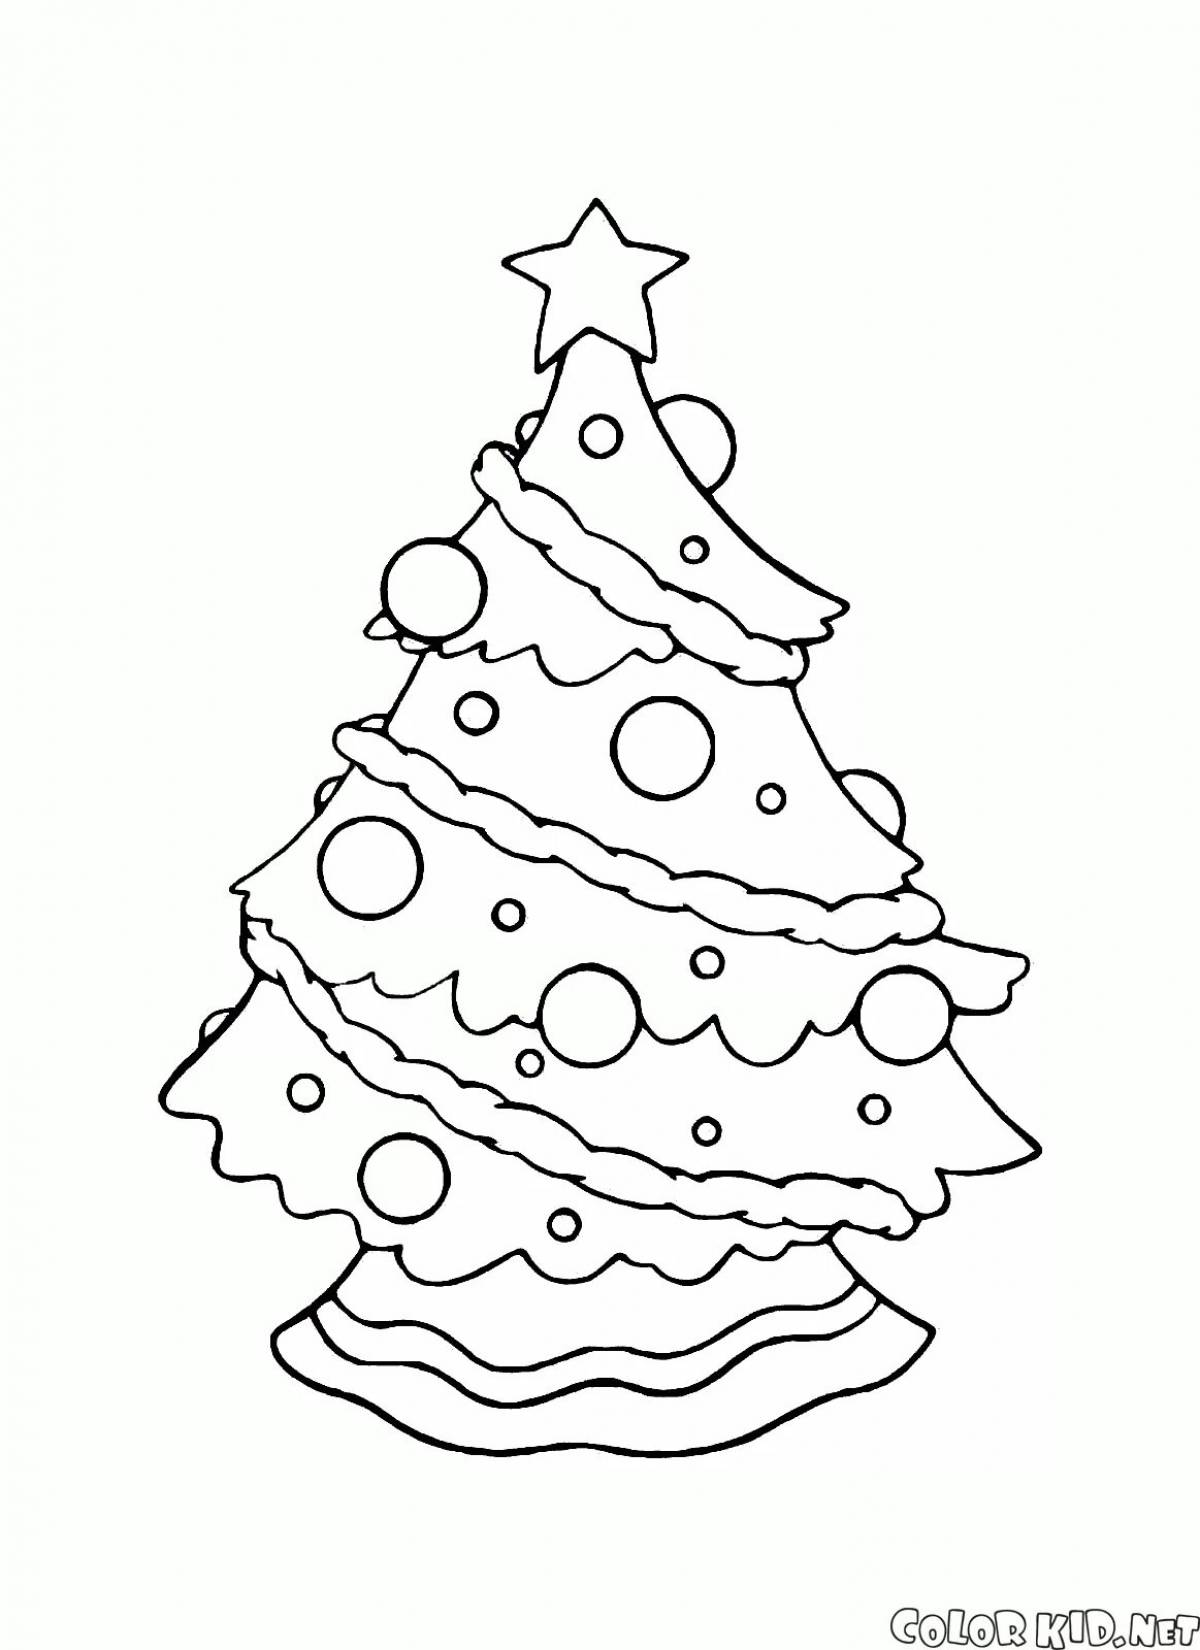 Анимированная страница раскраски рождественской елки